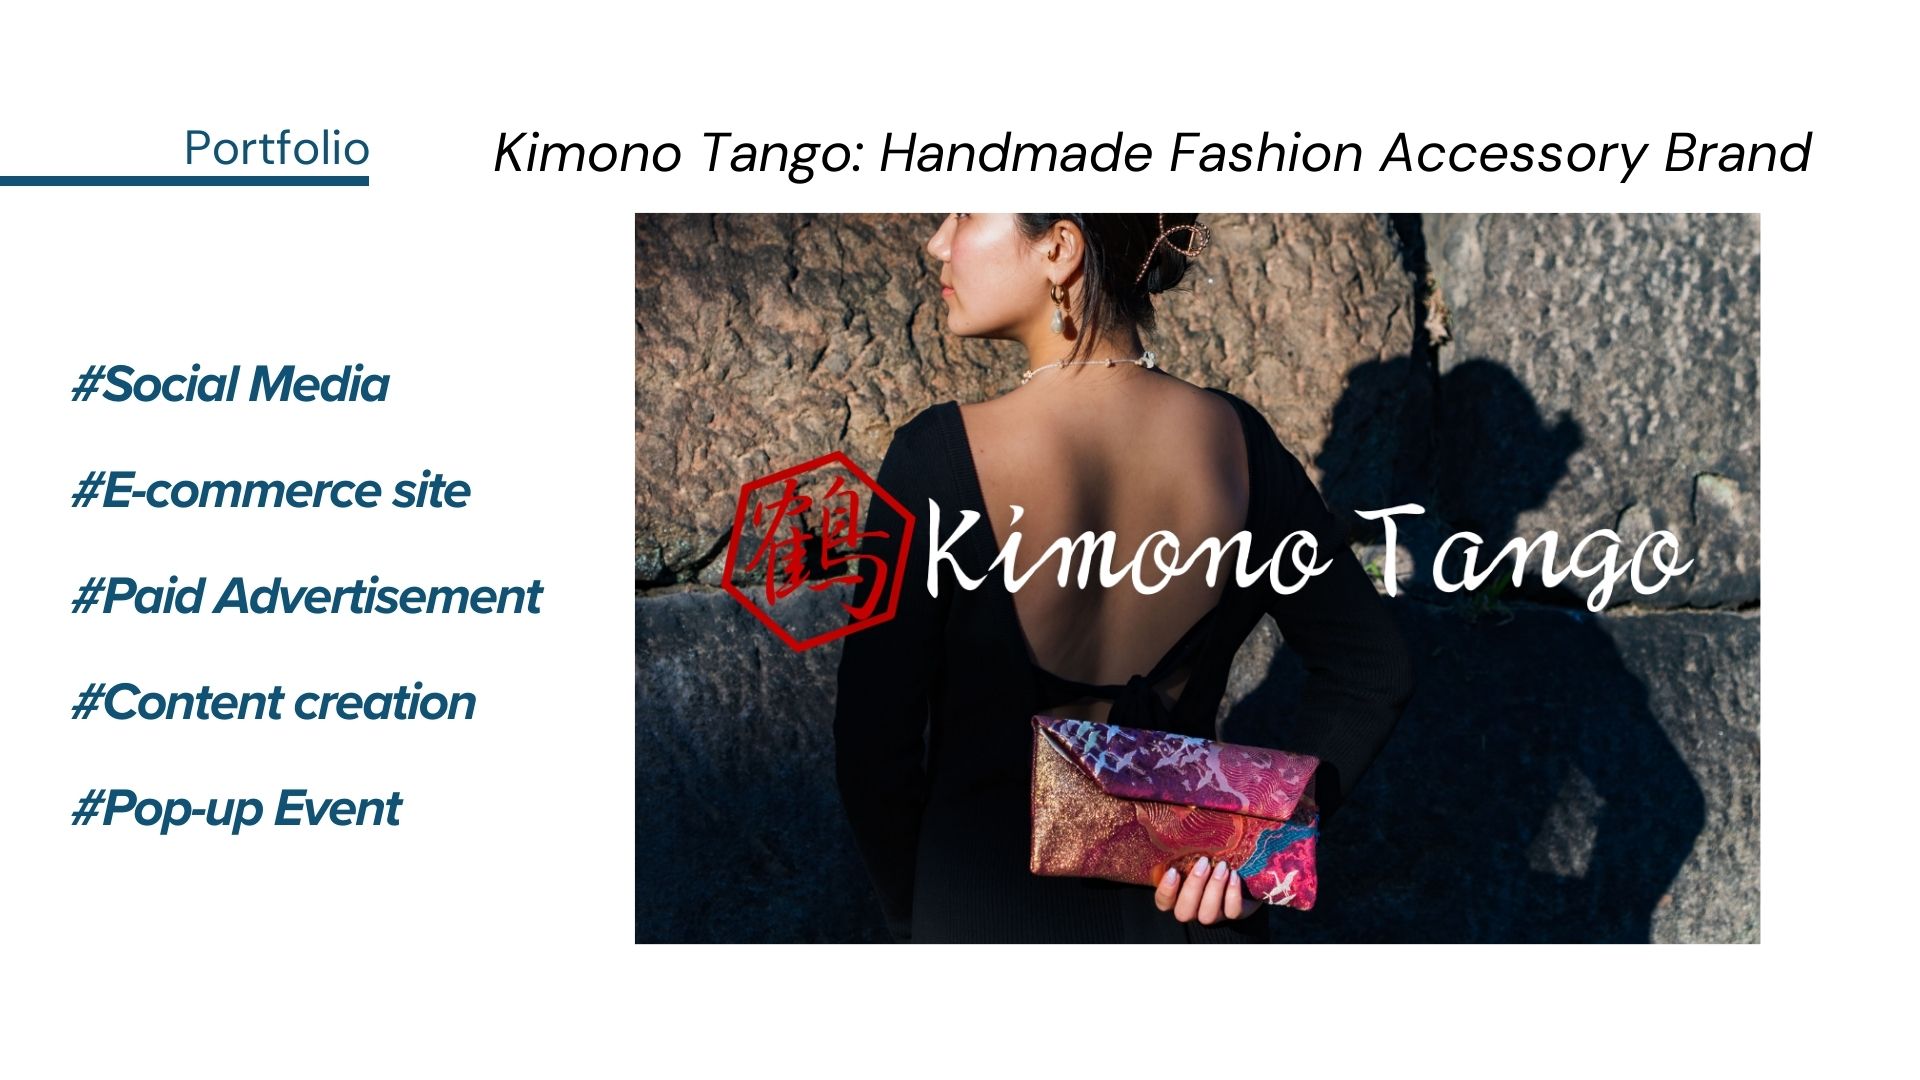 Portfolio: Kimono Tango